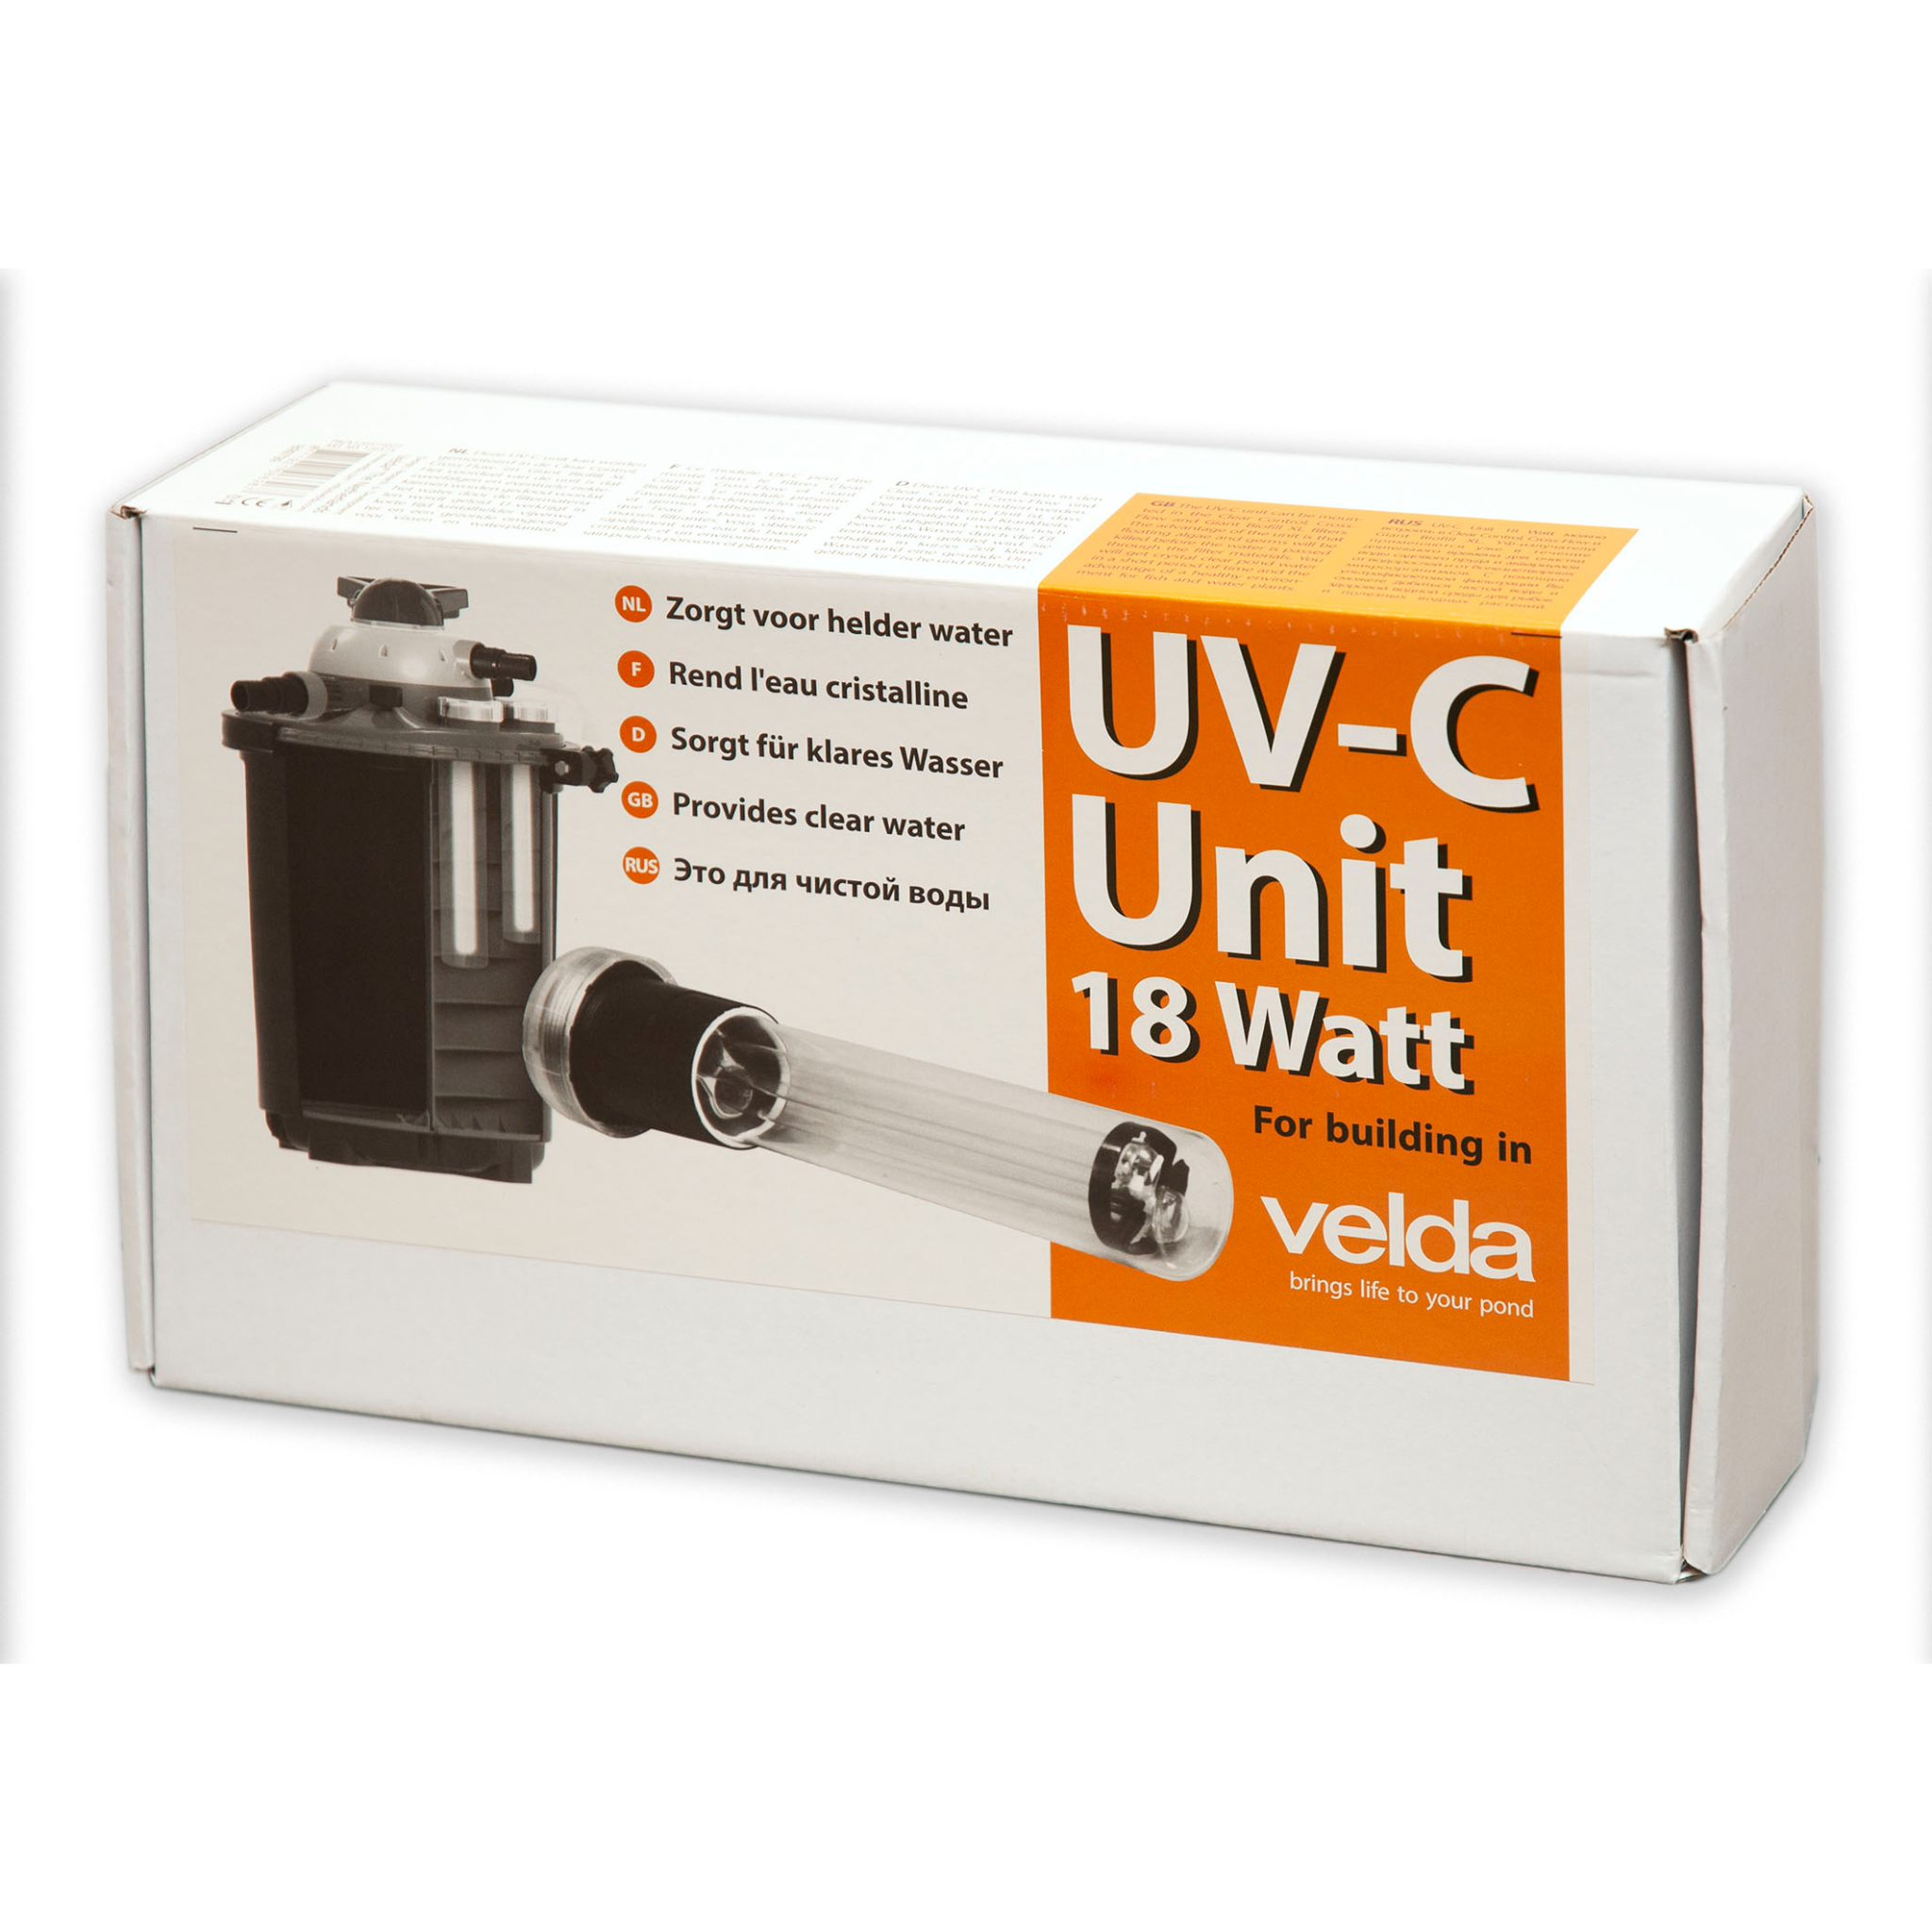 UV-C Einbau Unit